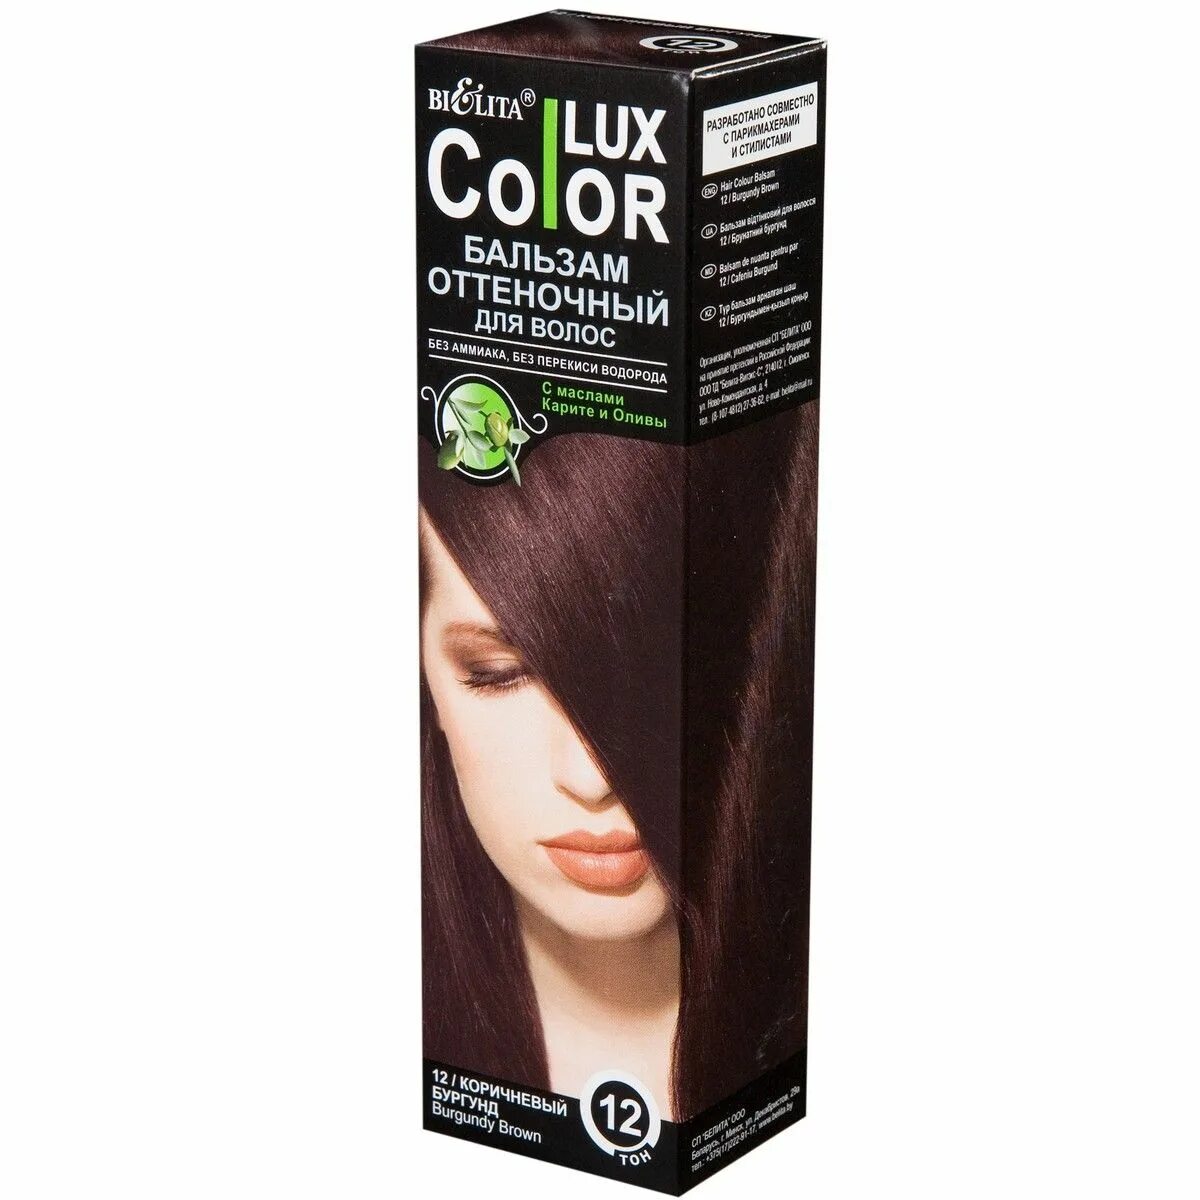 Оттеночные средства для волос. Бальзам Bielita Color Lux, тон 10 Медно-русый. Бальзам Bielita Color Lux, тон 14.1 махагон. Бальзам Bielita Color Lux, тон 11 каштан. Белита/Color Lux/ бальзам оттеночный для волос спелая вишня / тон 14 / 100 мл.